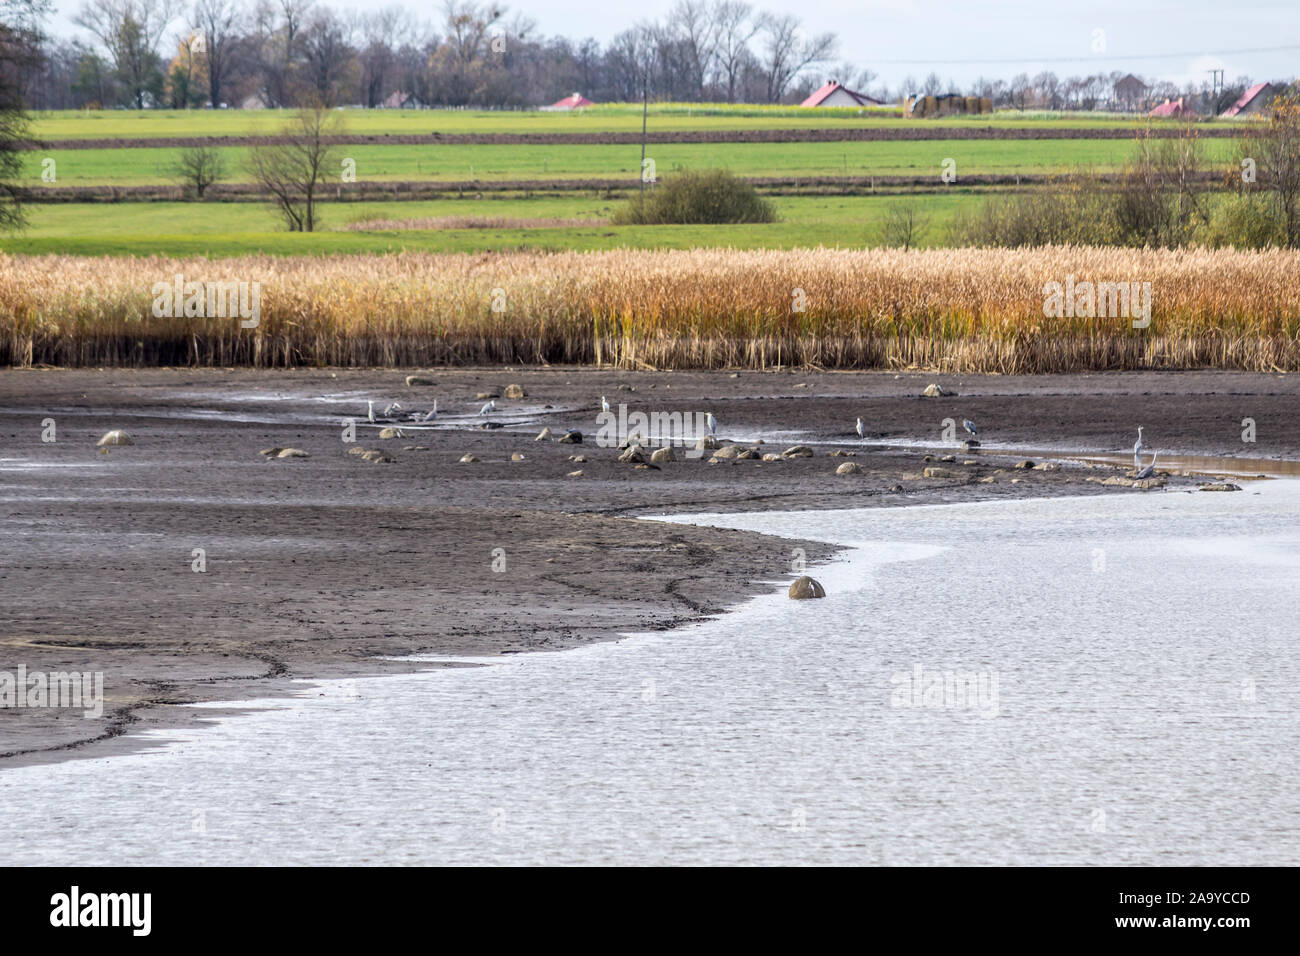 Wasser aus dem Teich abgelassen. Vögel für Lebensmittel im Schlamm suchen. Das Schilf und die Bäume im Hintergrund. Fischindustrie. podlasien, Polen. Stockfoto